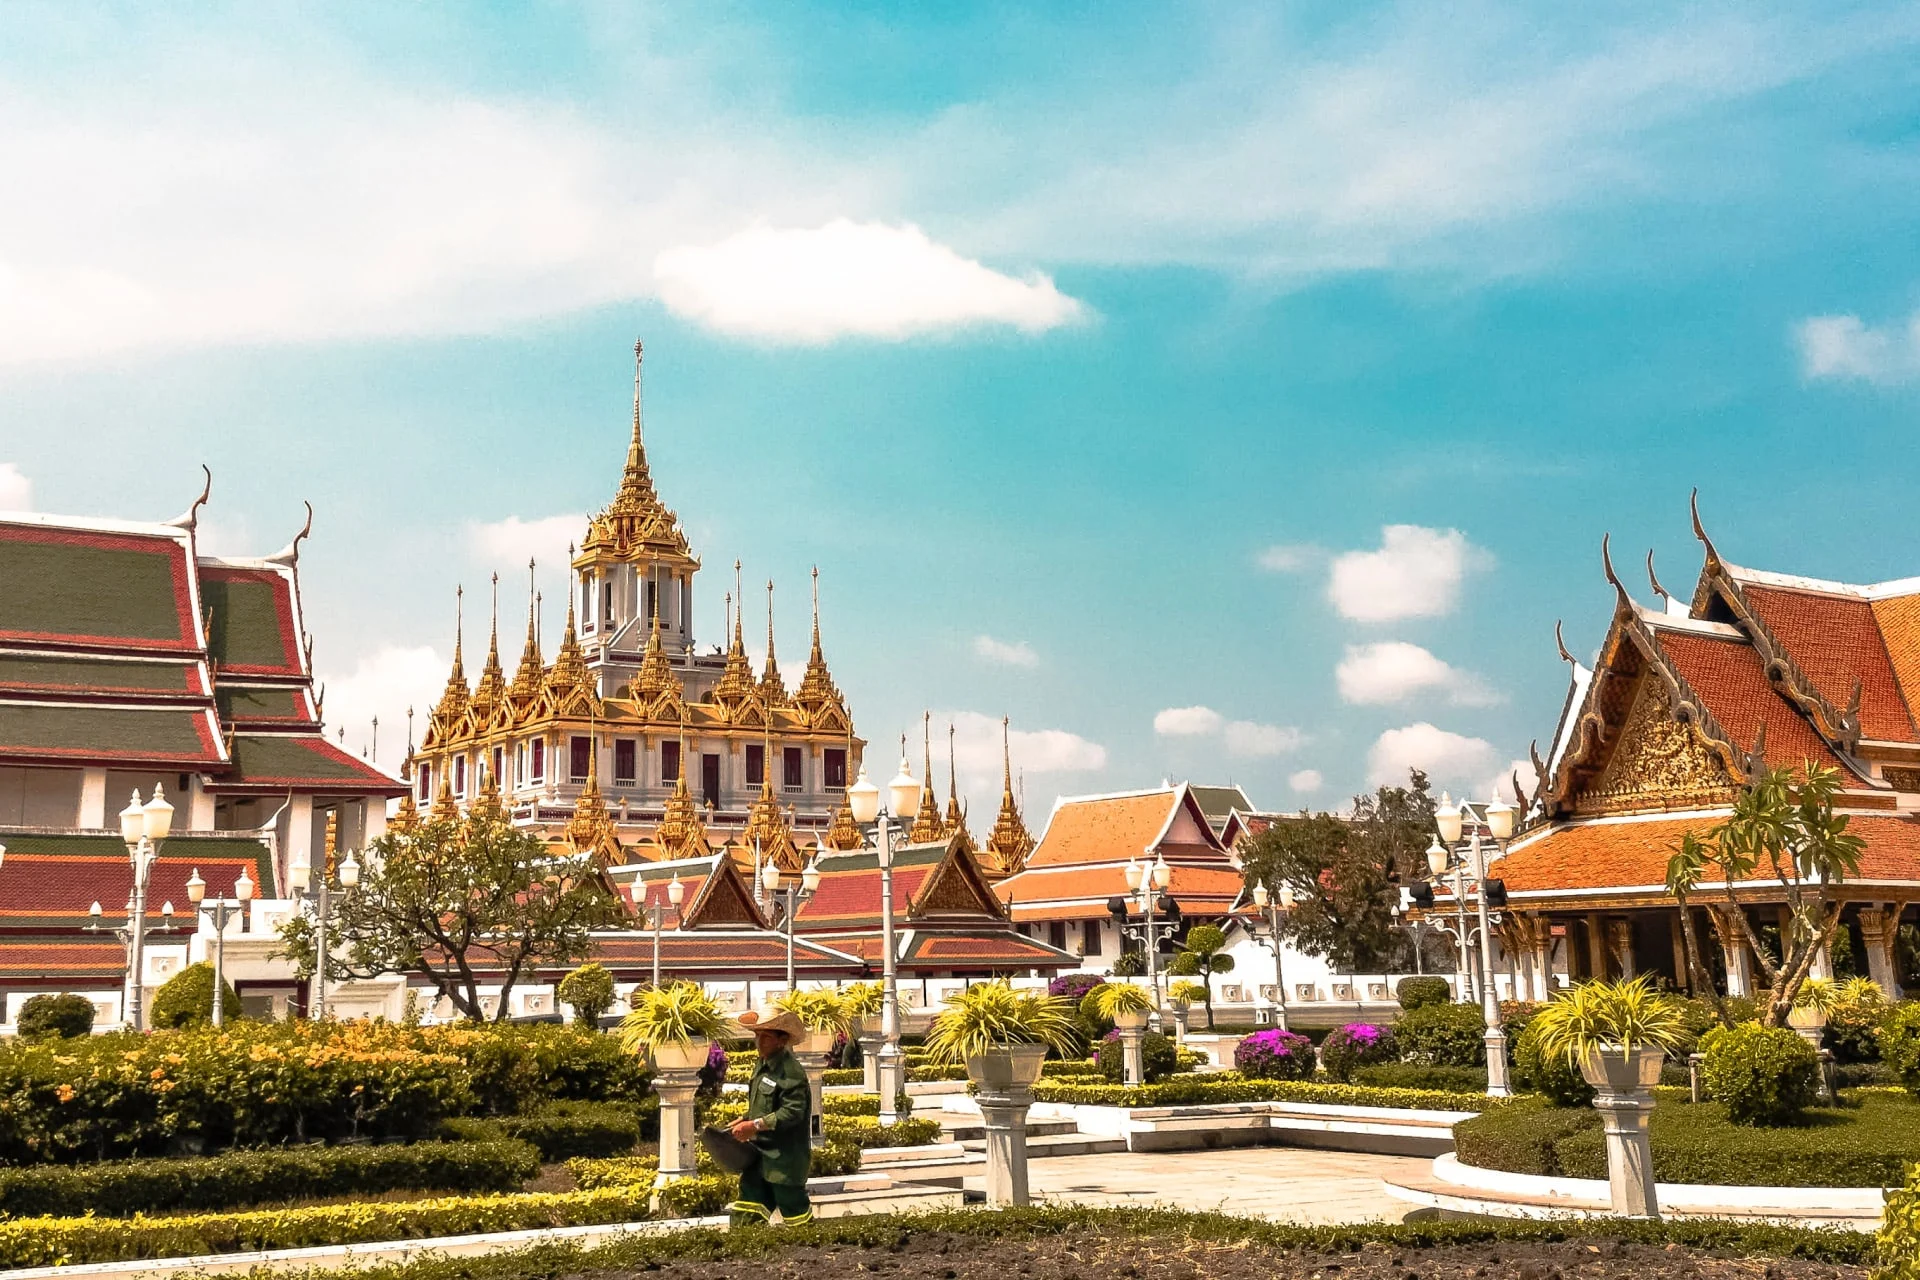 The grand palace in bangkok, thailand.